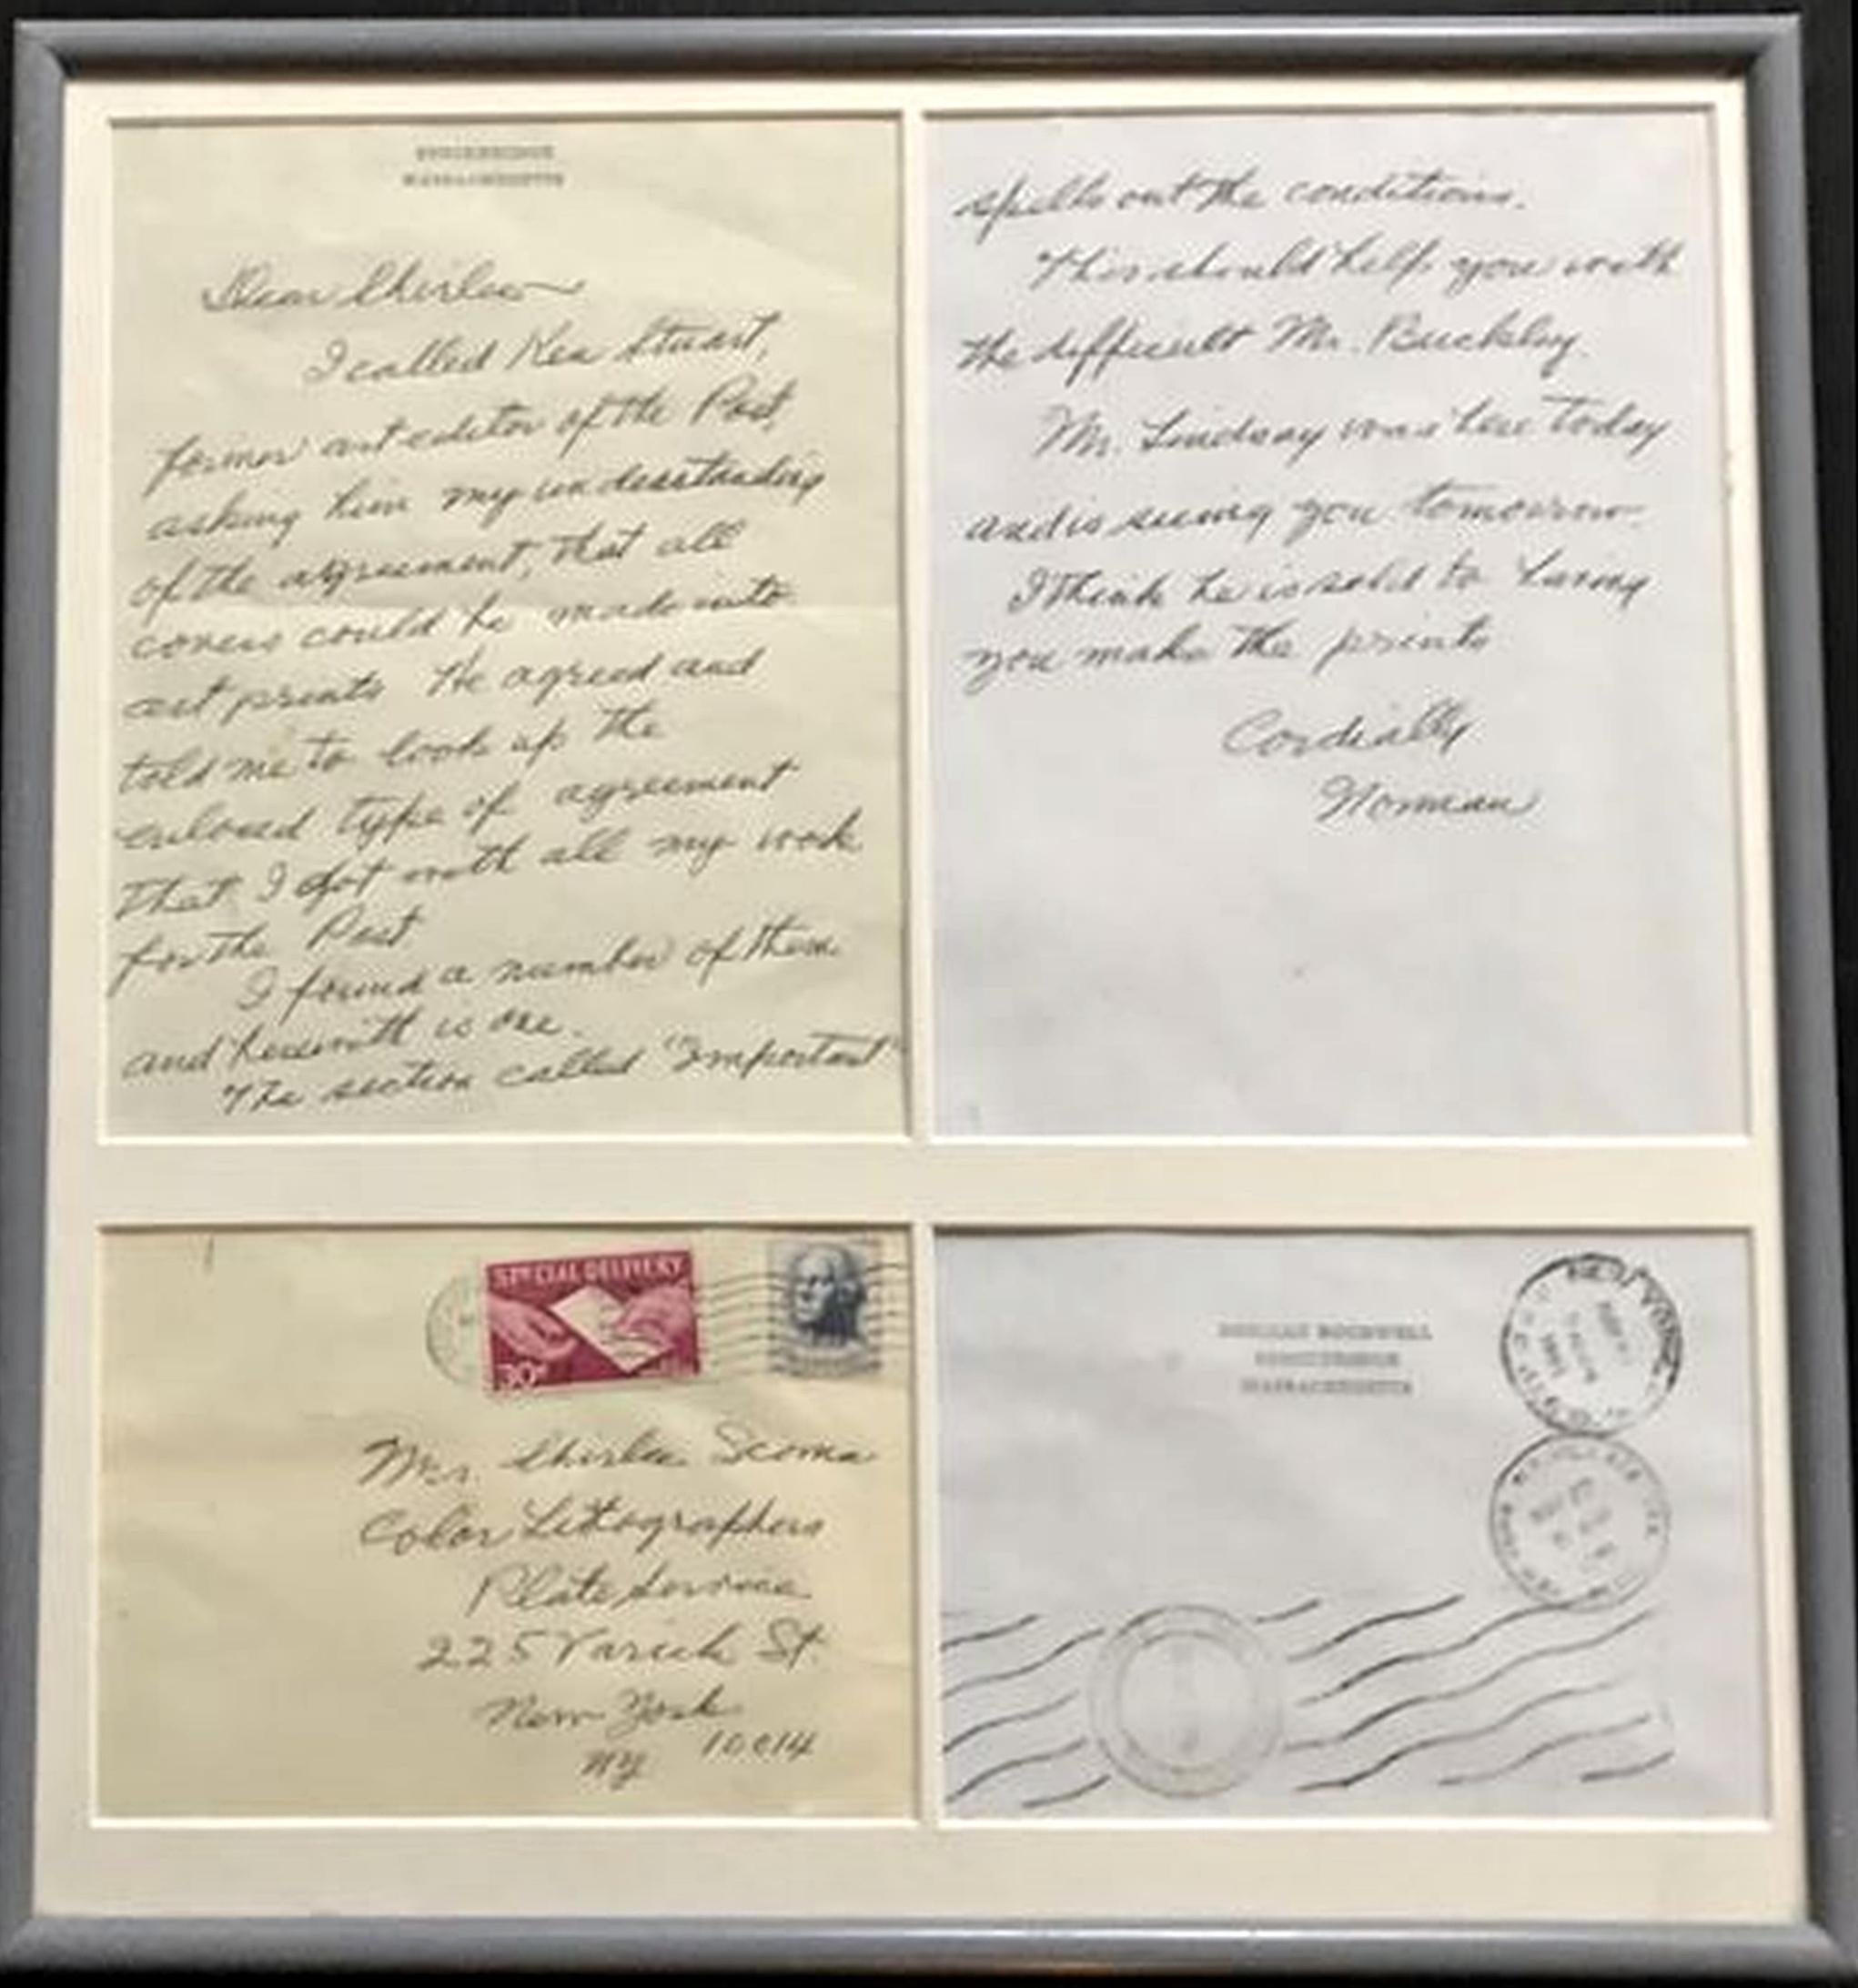 "Das sollte Ihnen bei dem schwierigen Mr. Buckley helfen" handschriftlicher, signierter Brief – Art von Norman Rockwell